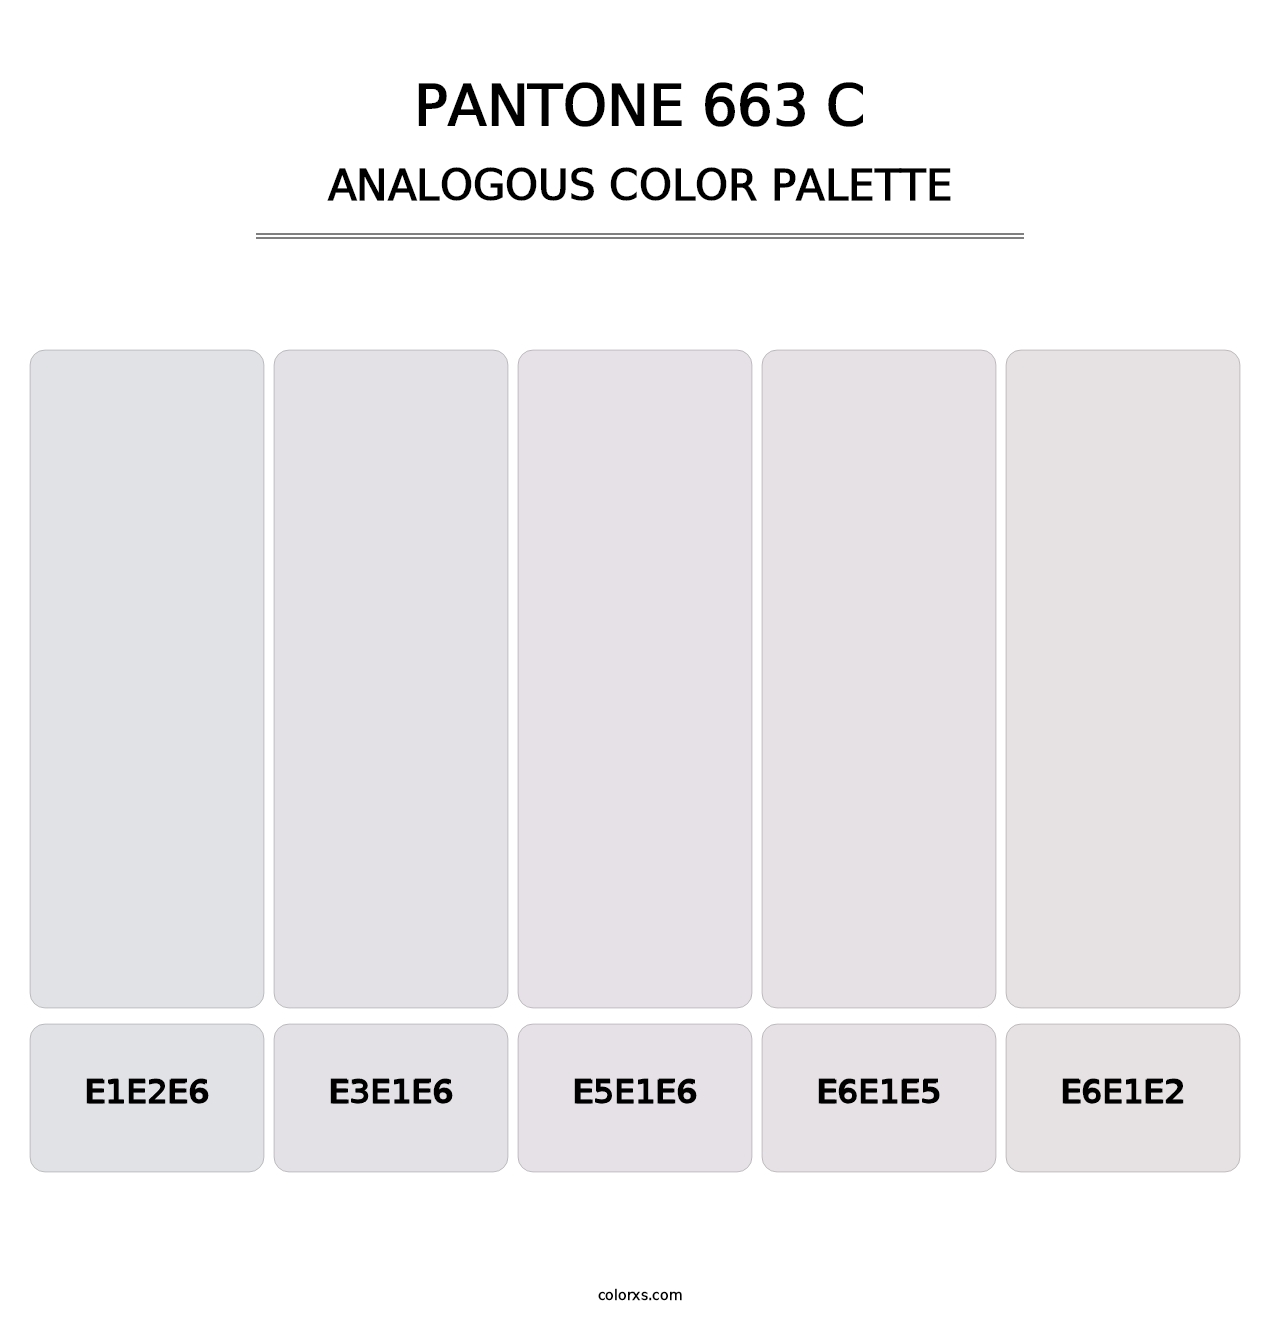 PANTONE 663 C - Analogous Color Palette